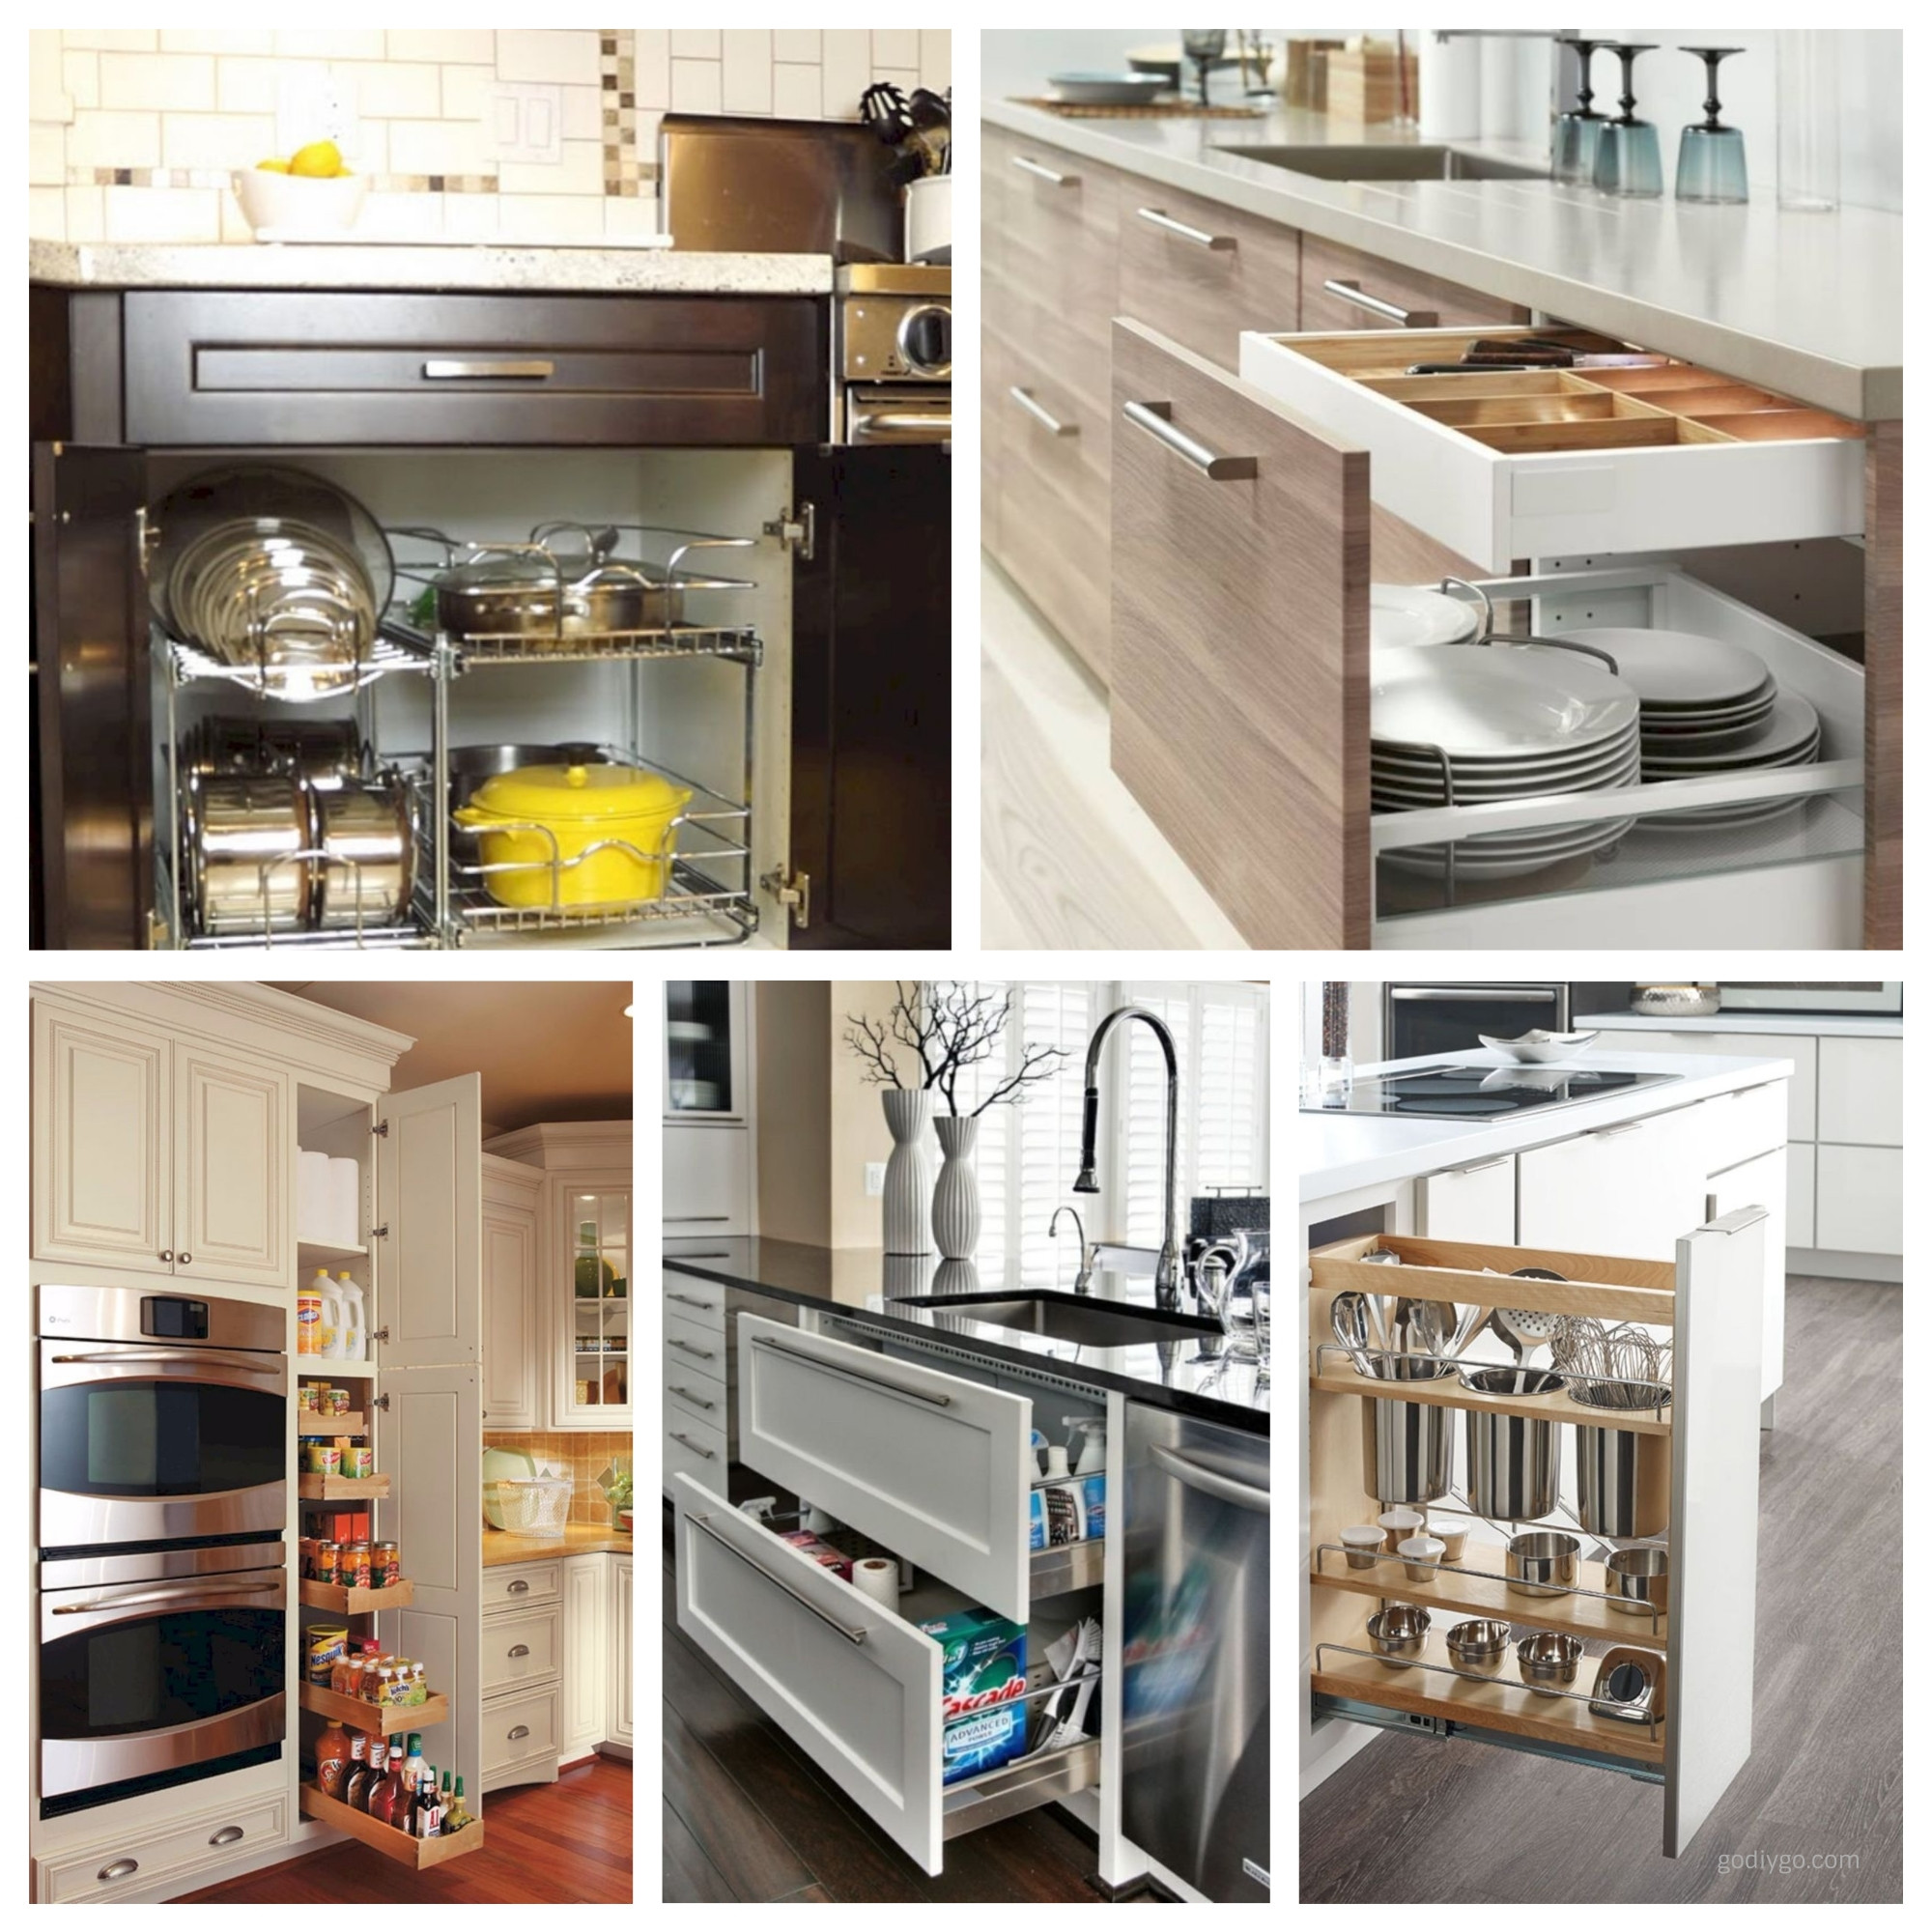 Kitchen Cabinet Storage
 44 Smart Kitchen Cabinet Organization Ideas GODIYGO